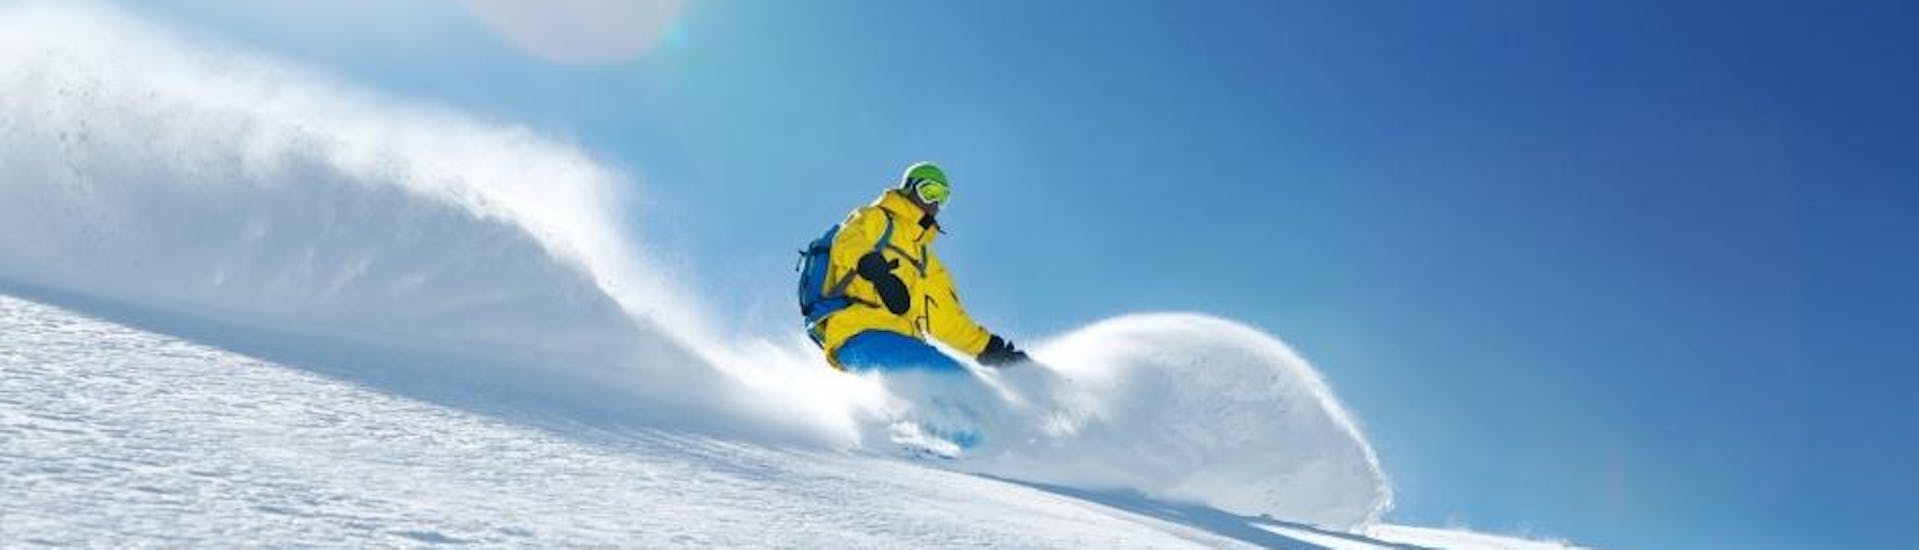 Snowboardlessen voor volwassenen + verhuurpakket voor alle niveaus met Skischule Toni Gruber.